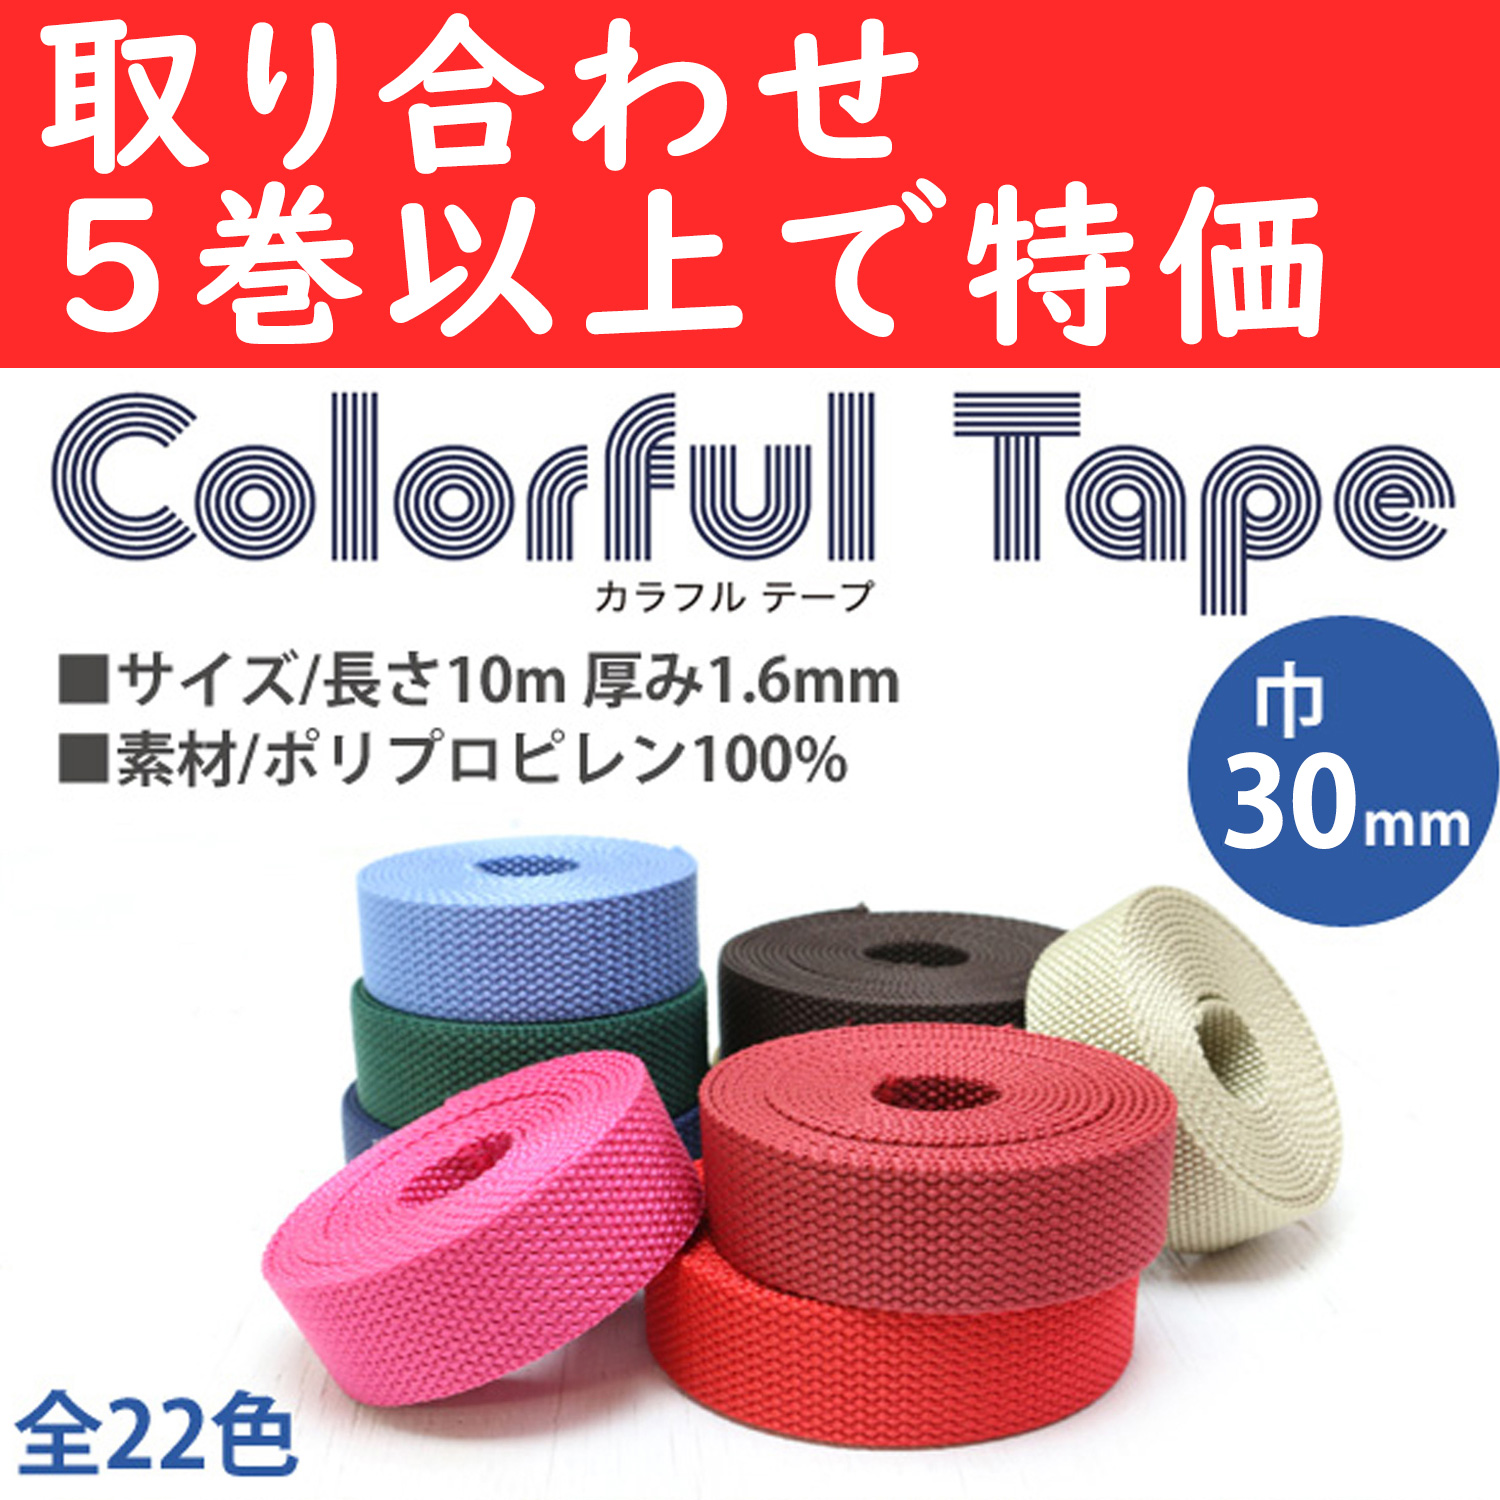 【第二弾】MHP3010-OVER5 ポリテープ 巾30mm×10m 色取り合わせ5巻以上 (巻)